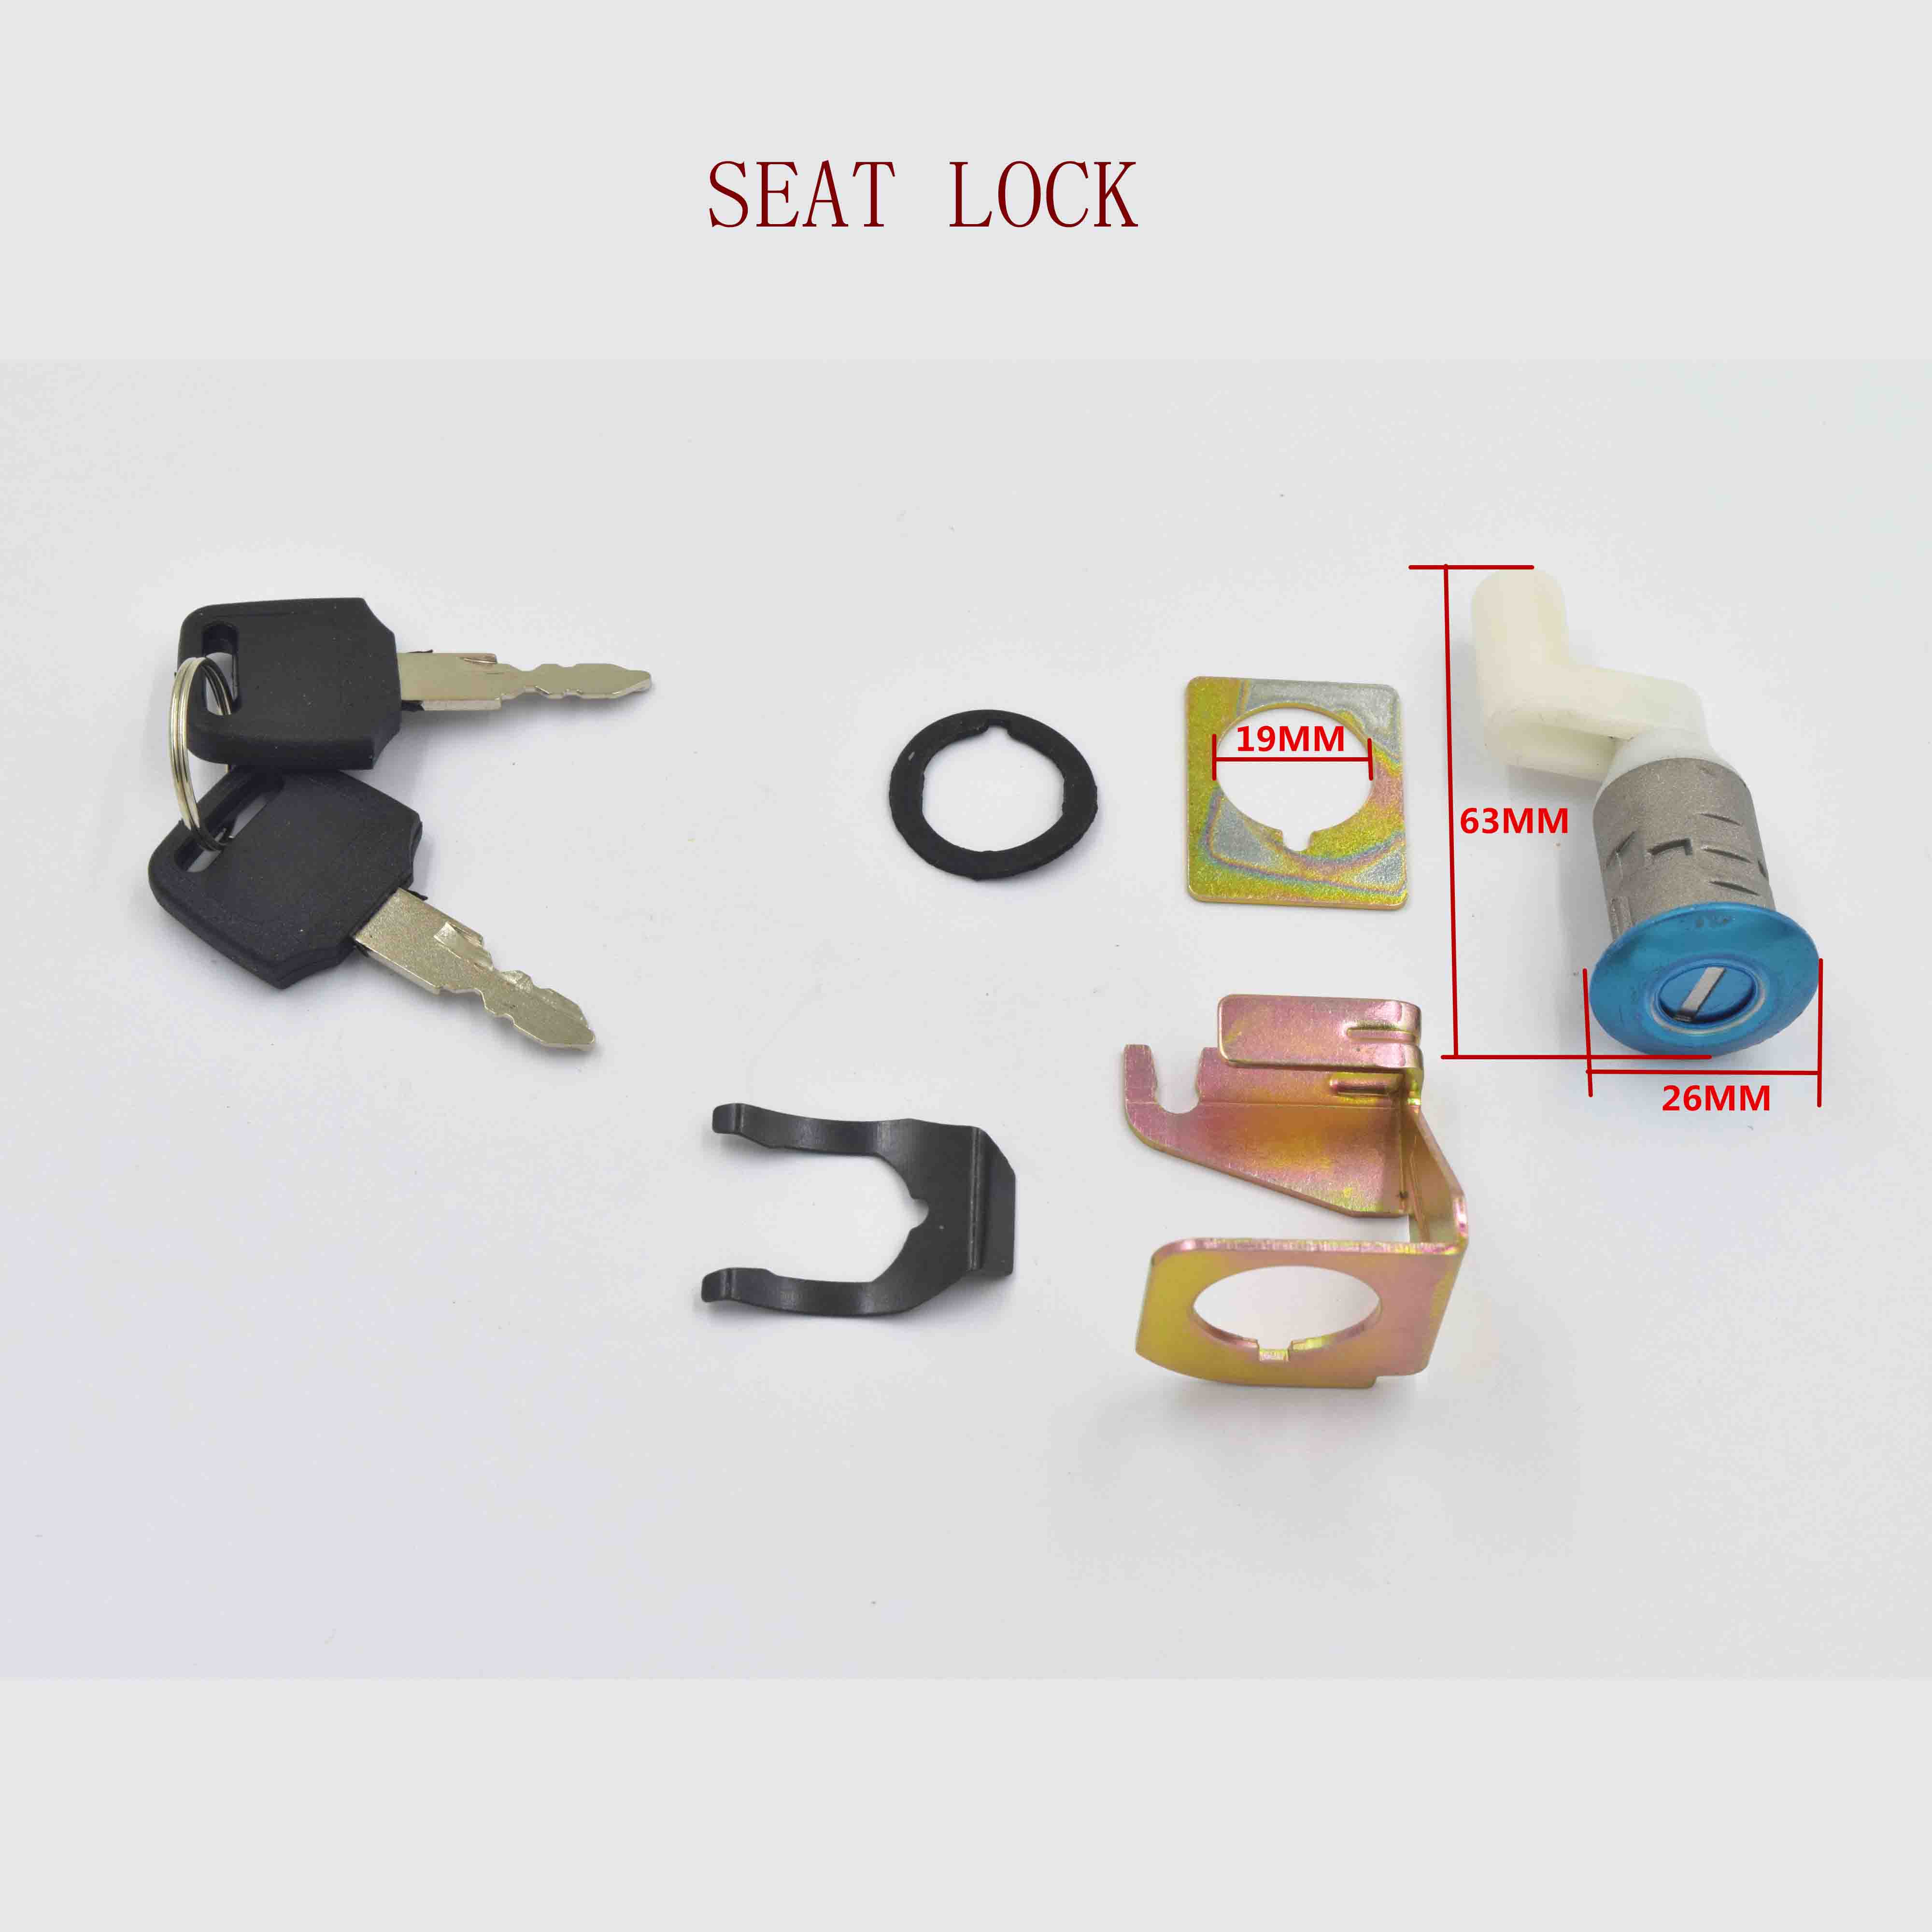 SEAT LOCK AX 